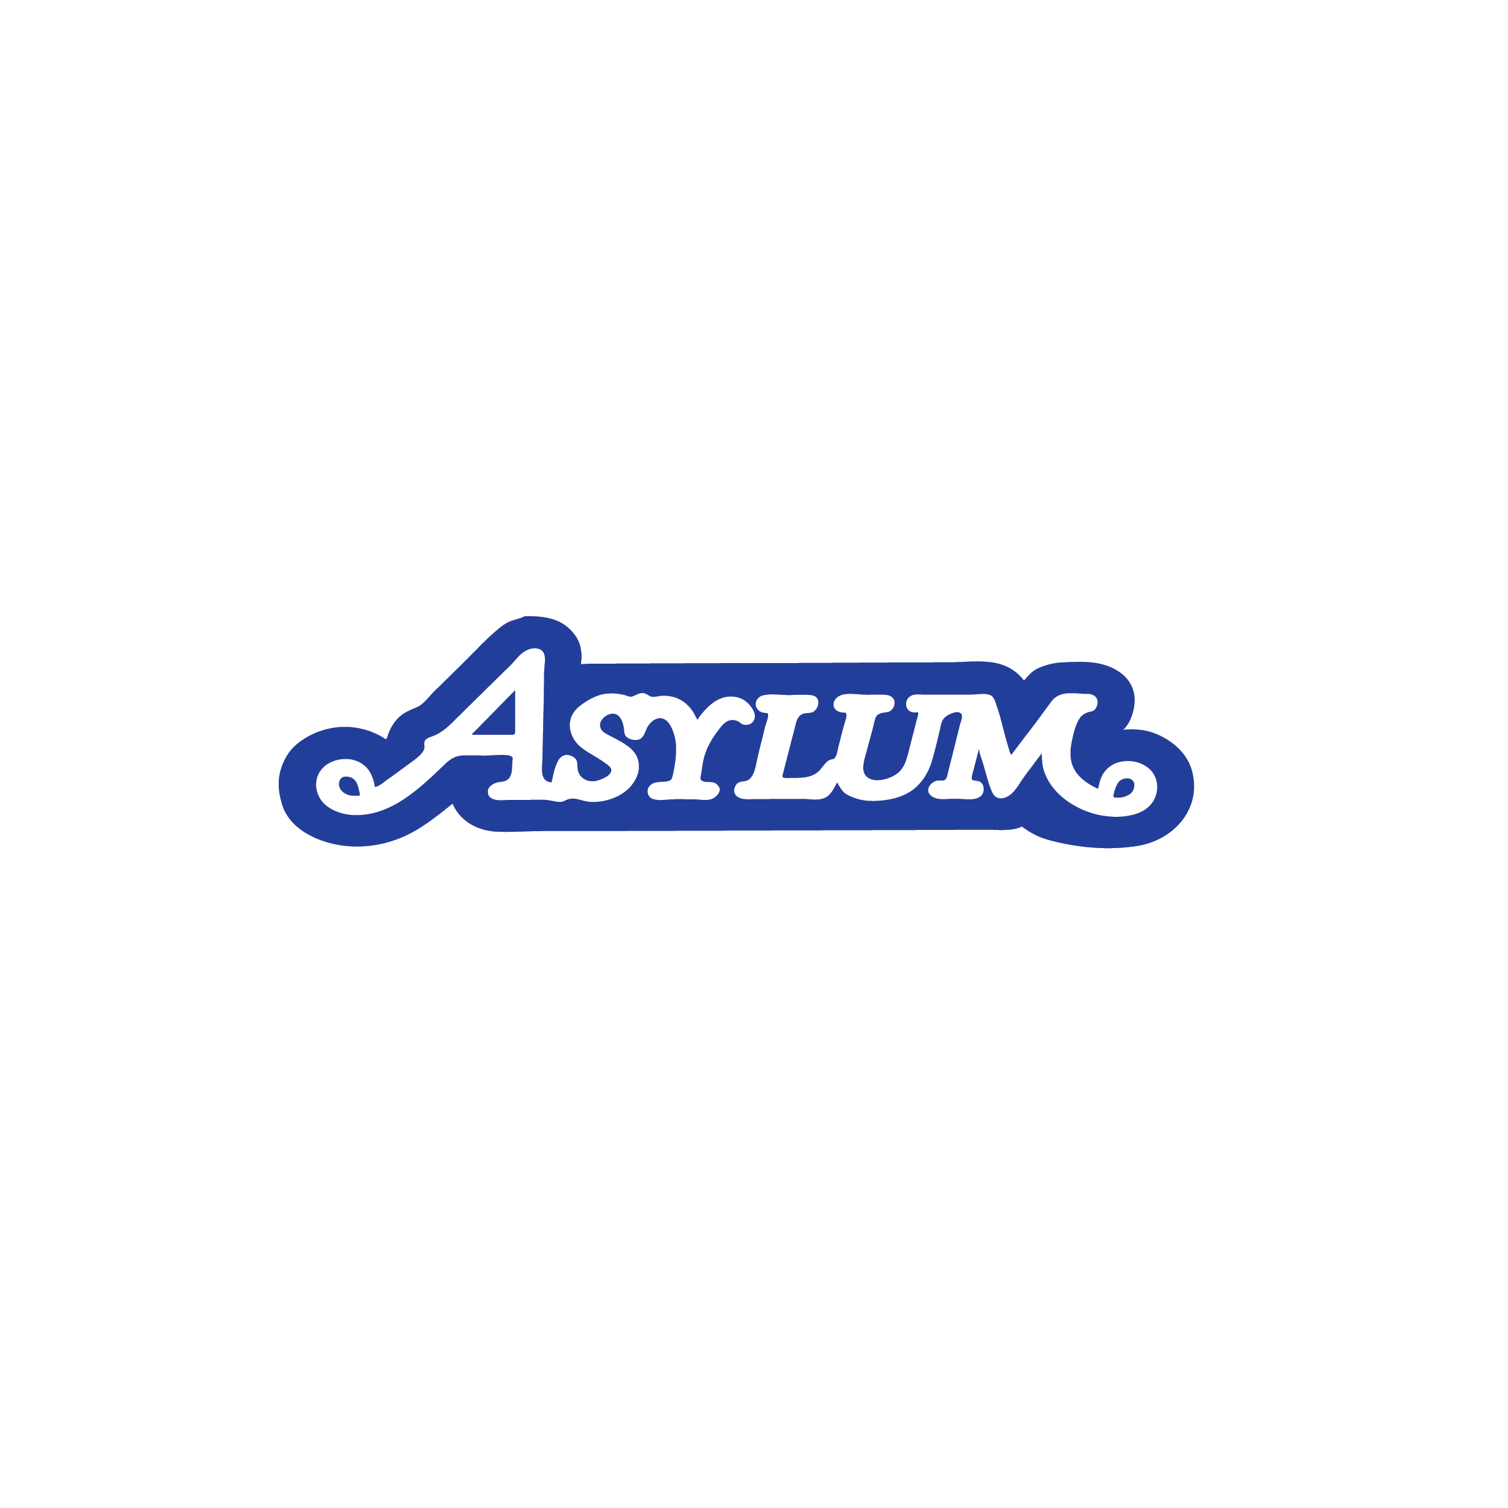 Asylum Logo Black Mug, Double Sided